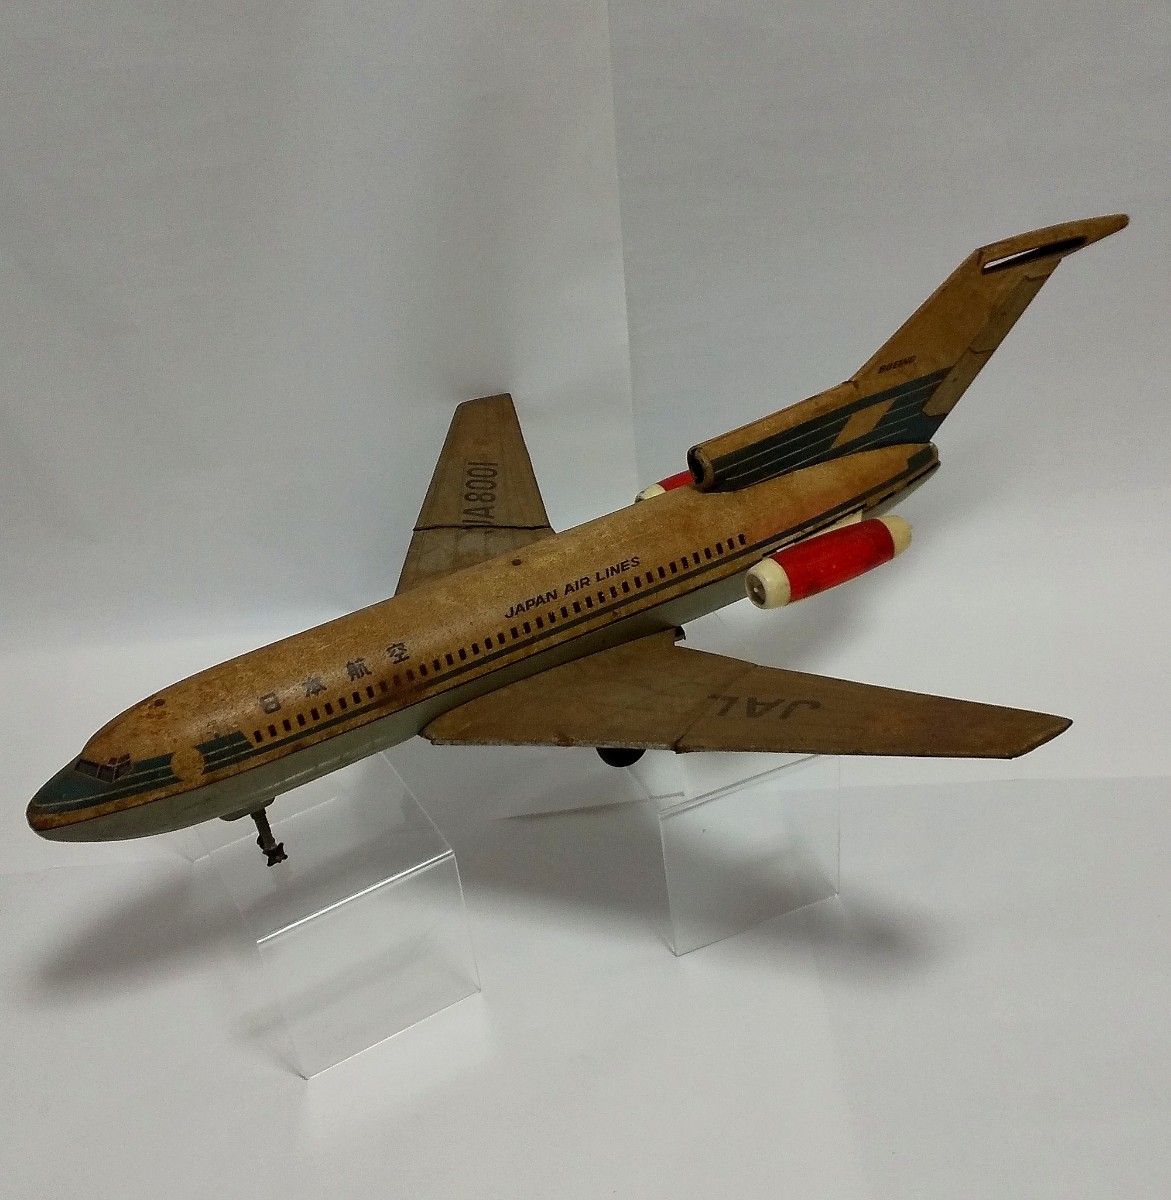 でかい ブリキ レトロ 当時物 古い玩具店在庫品 日本航空JA8001 JAL ボーイング727 飛行機 旅客機 ビンテージ 昭和レトロ 長さ74cm_画像1